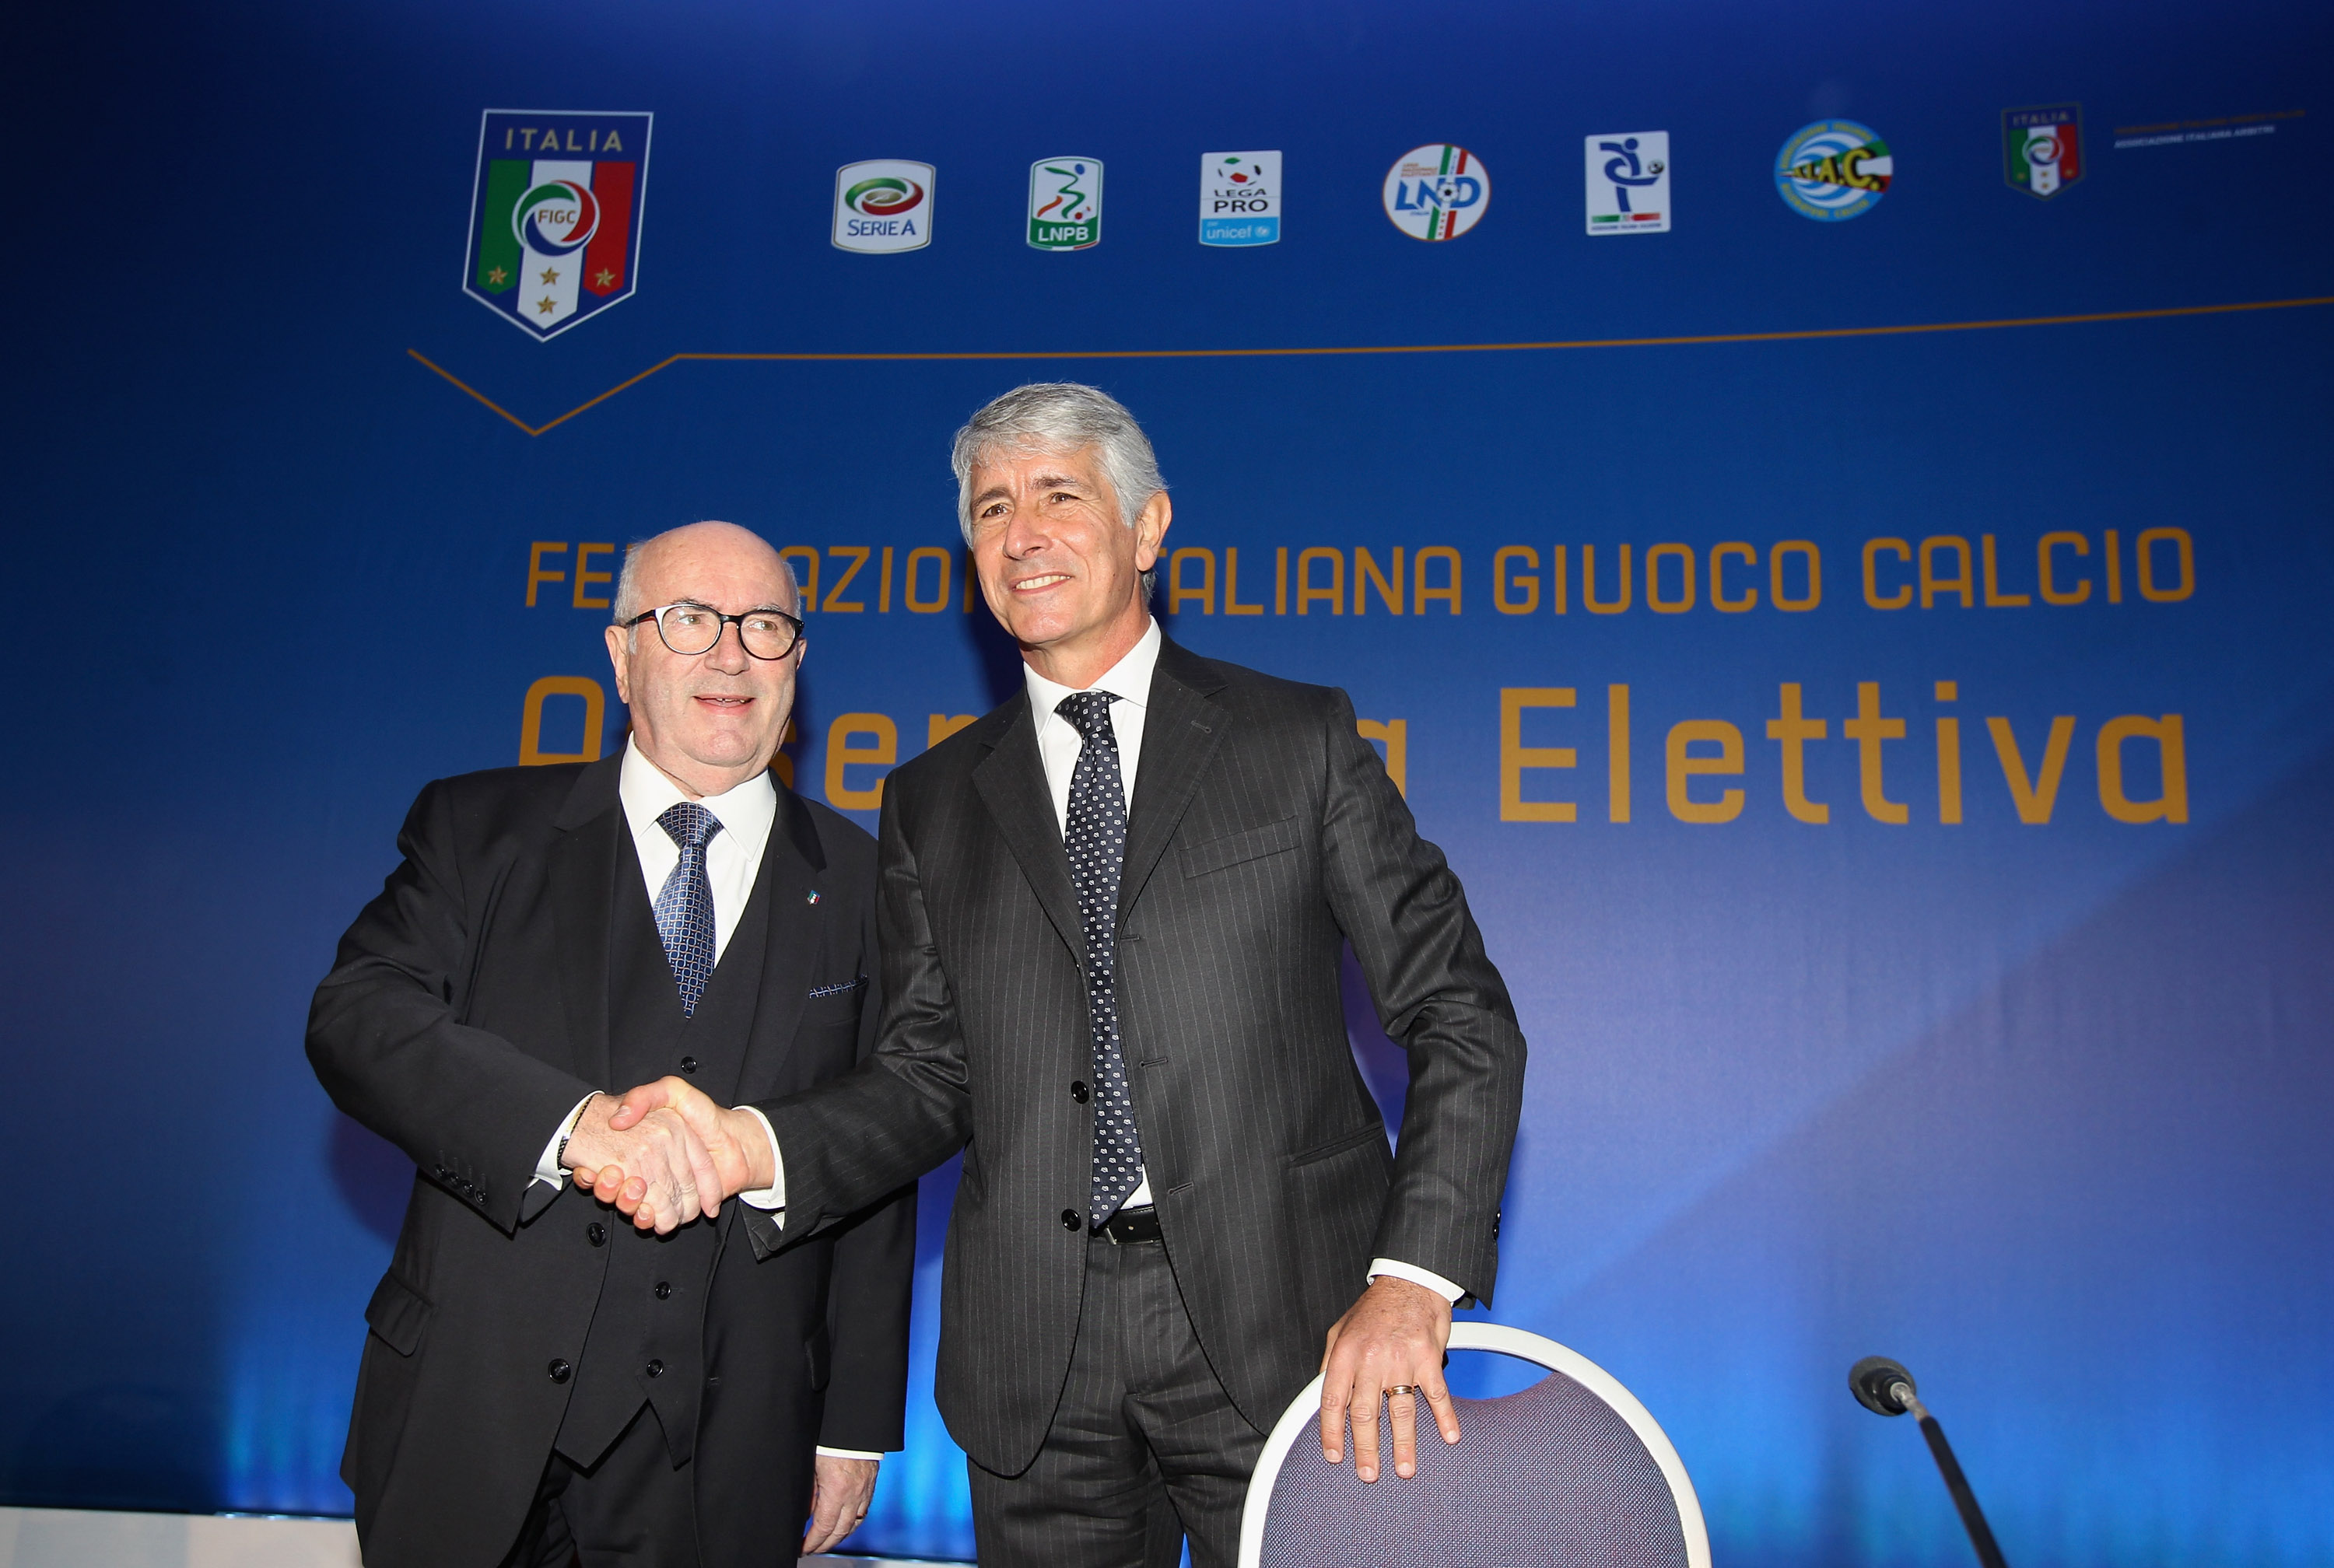 E’ TAVECCHIO BIS – Decise al terzo scrutinio le Elezioni FIGC. E ora novità sullo Scudetto 1915 alla Lazio…